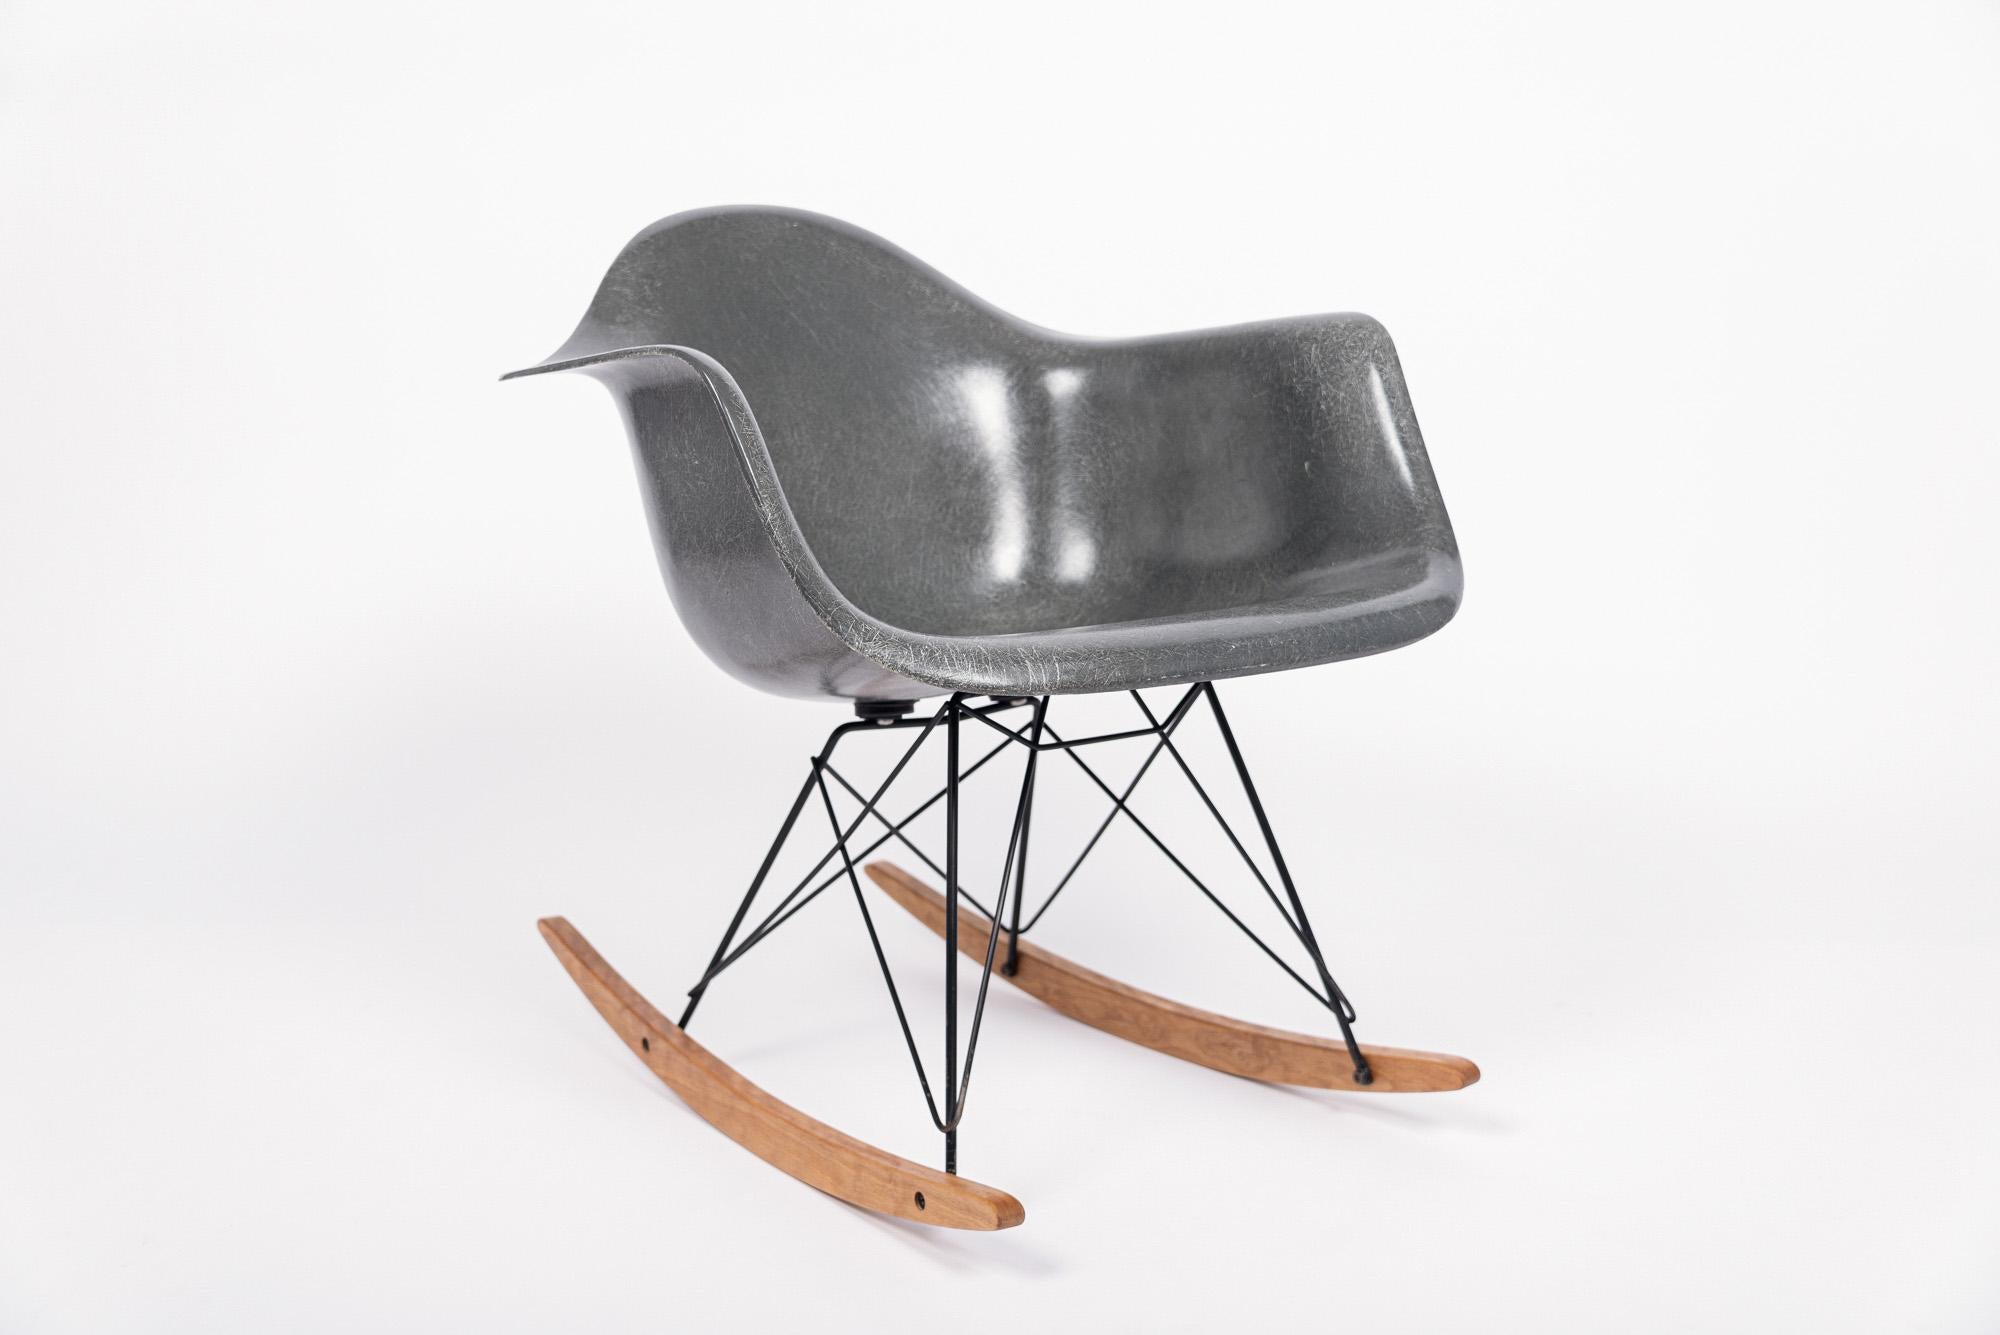 L'emblématique chaise RAR - Rocking (R) Arm (A) Chair on Rod (R) Base - a été conçue par Charles & Ray Eames pour Herman Miller en 1950 et lancée comme l'une des 5 options de base originales pour le nouveau modèle de chaise en fibre de verre. Le RAR